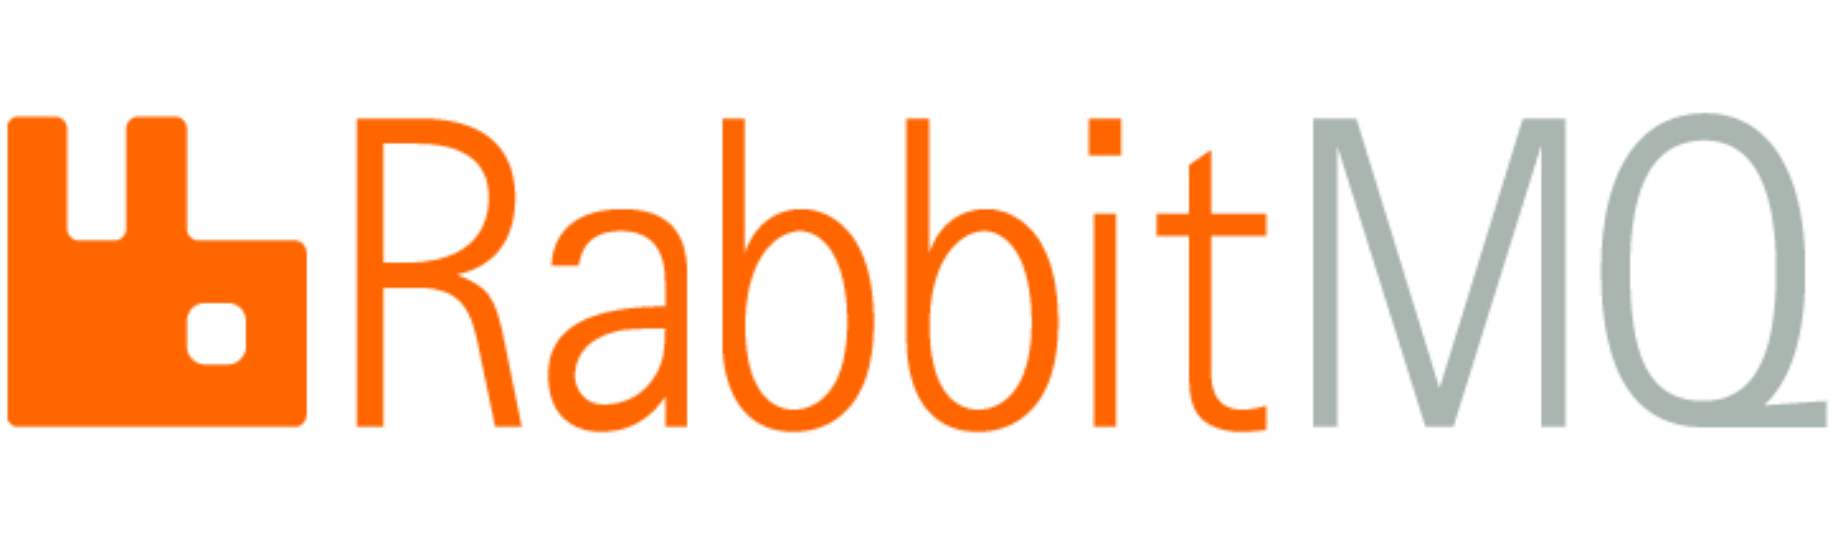 rabbitmq_logo